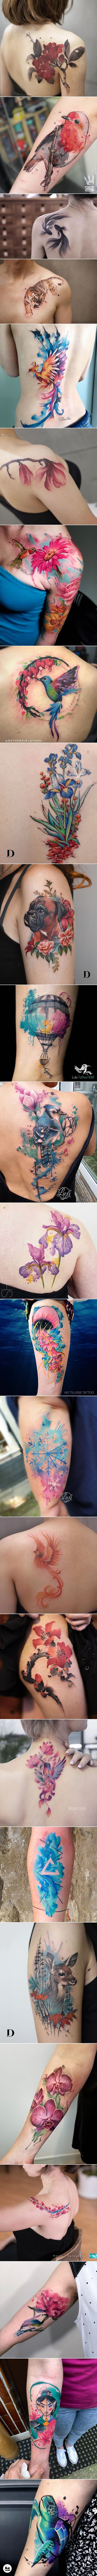 25 prekrasnih tetovaža koje mogu nečije tijelo pretvoriti u pravo umjetničko djelo